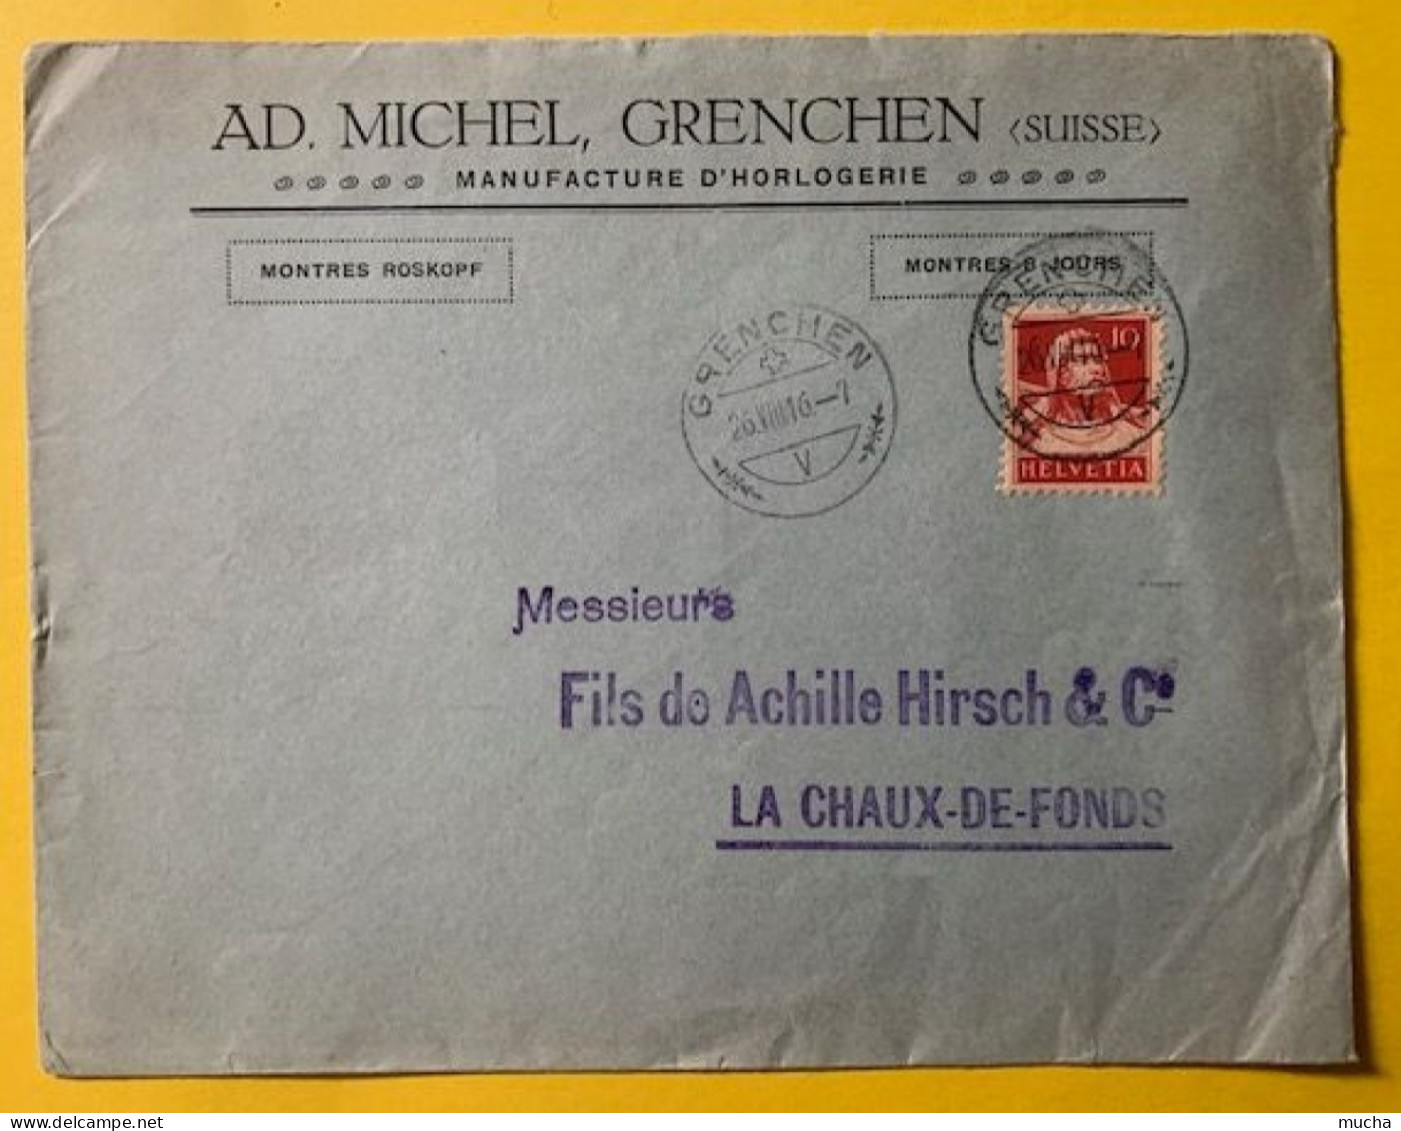 70019 - Suisse Lettre Ad. Michel Manufacture D'Horlogerie Grenchen 26.08.1916 - Horlogerie